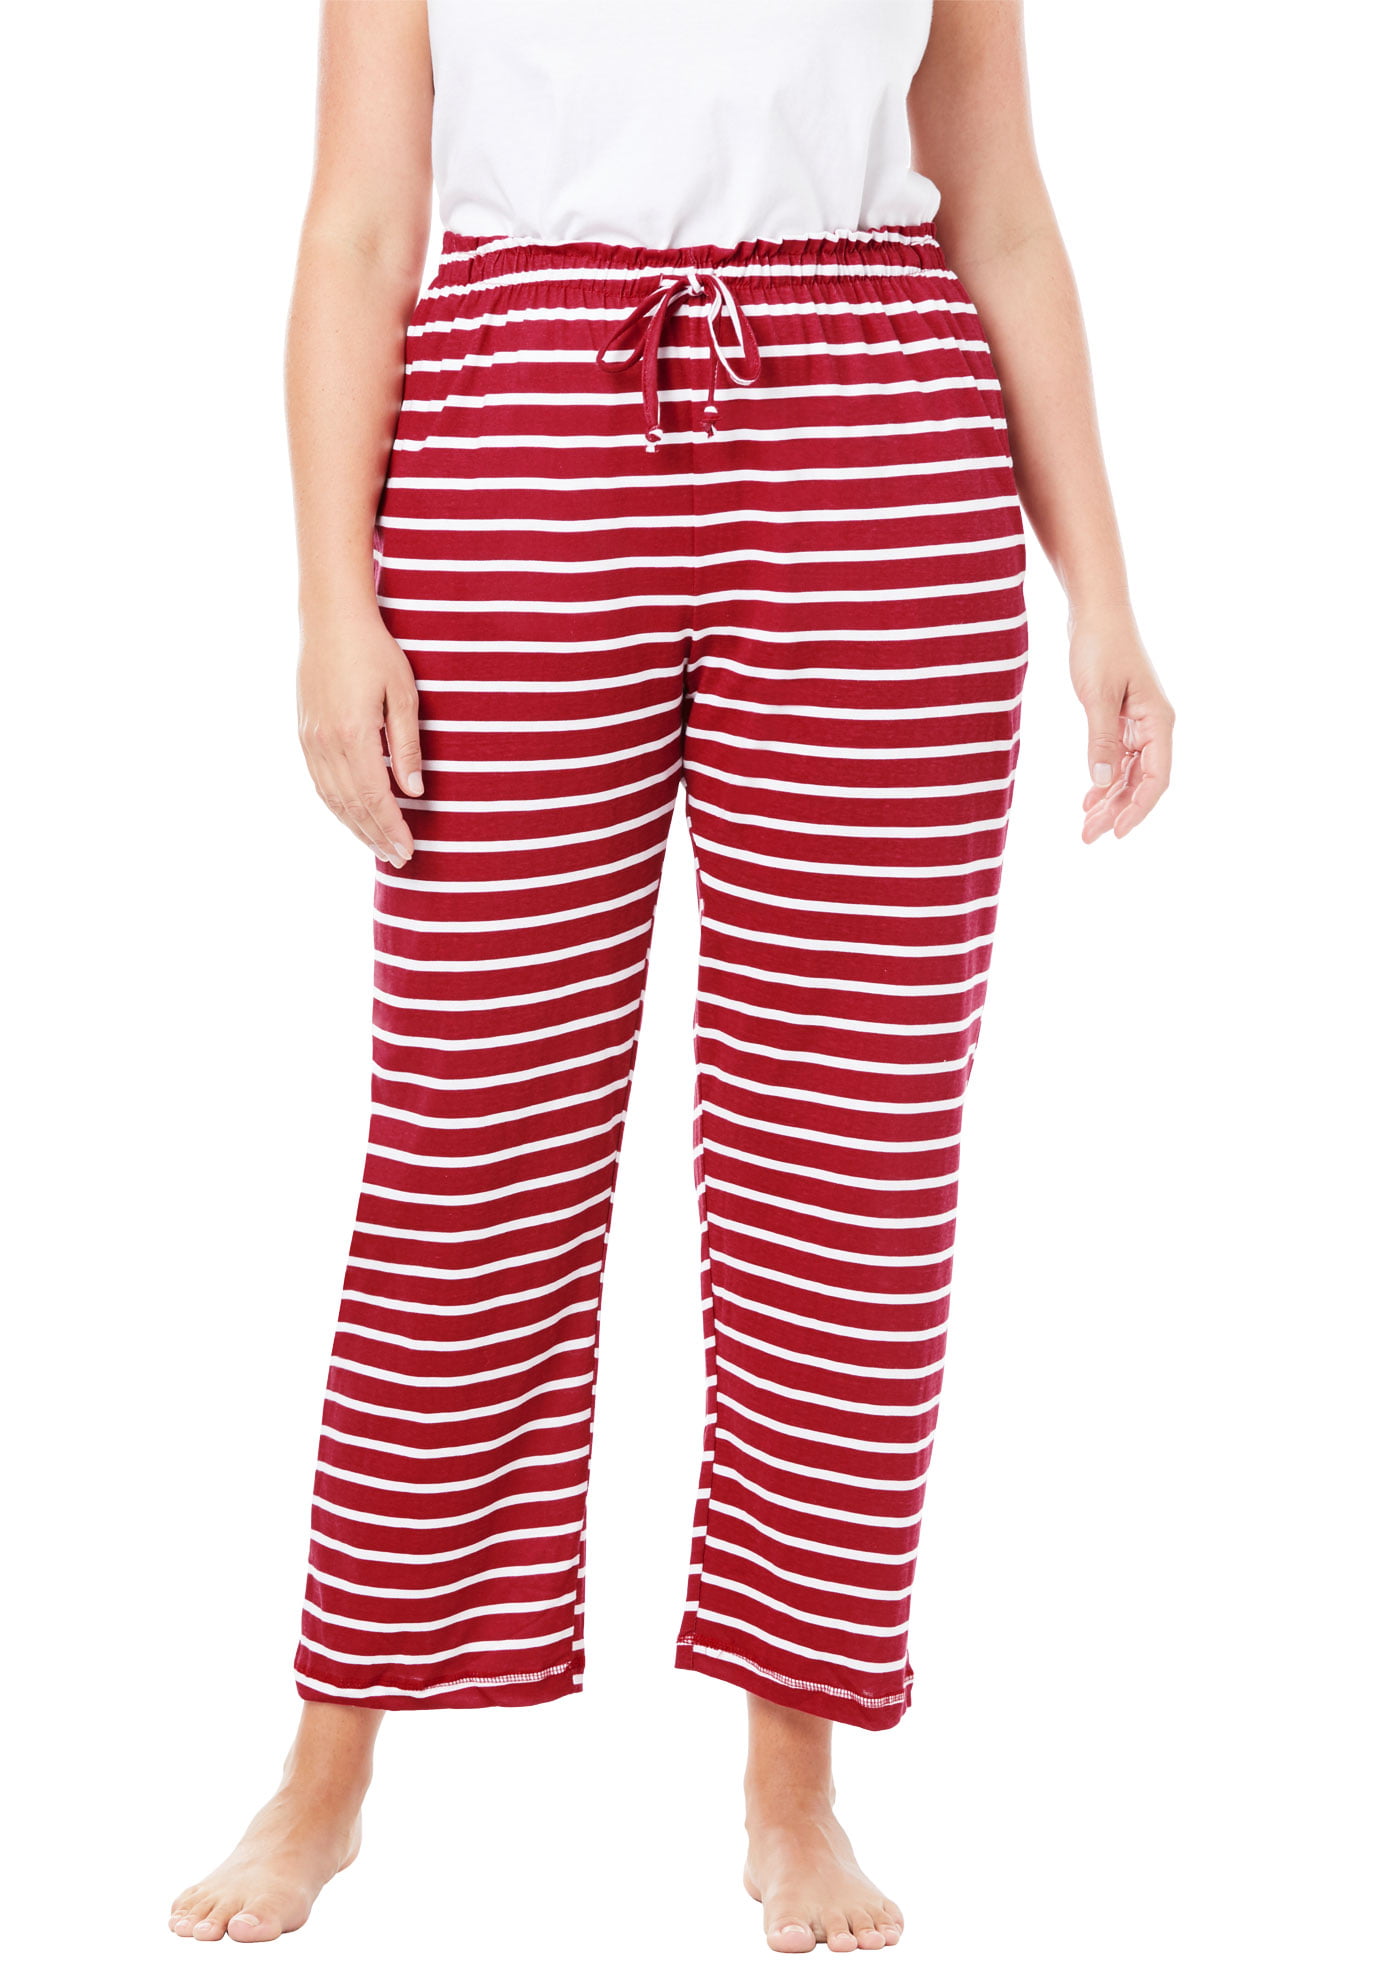 Womens Plus Size Knit Sleep Pant Dreams & Co Red White Stripe 6X 